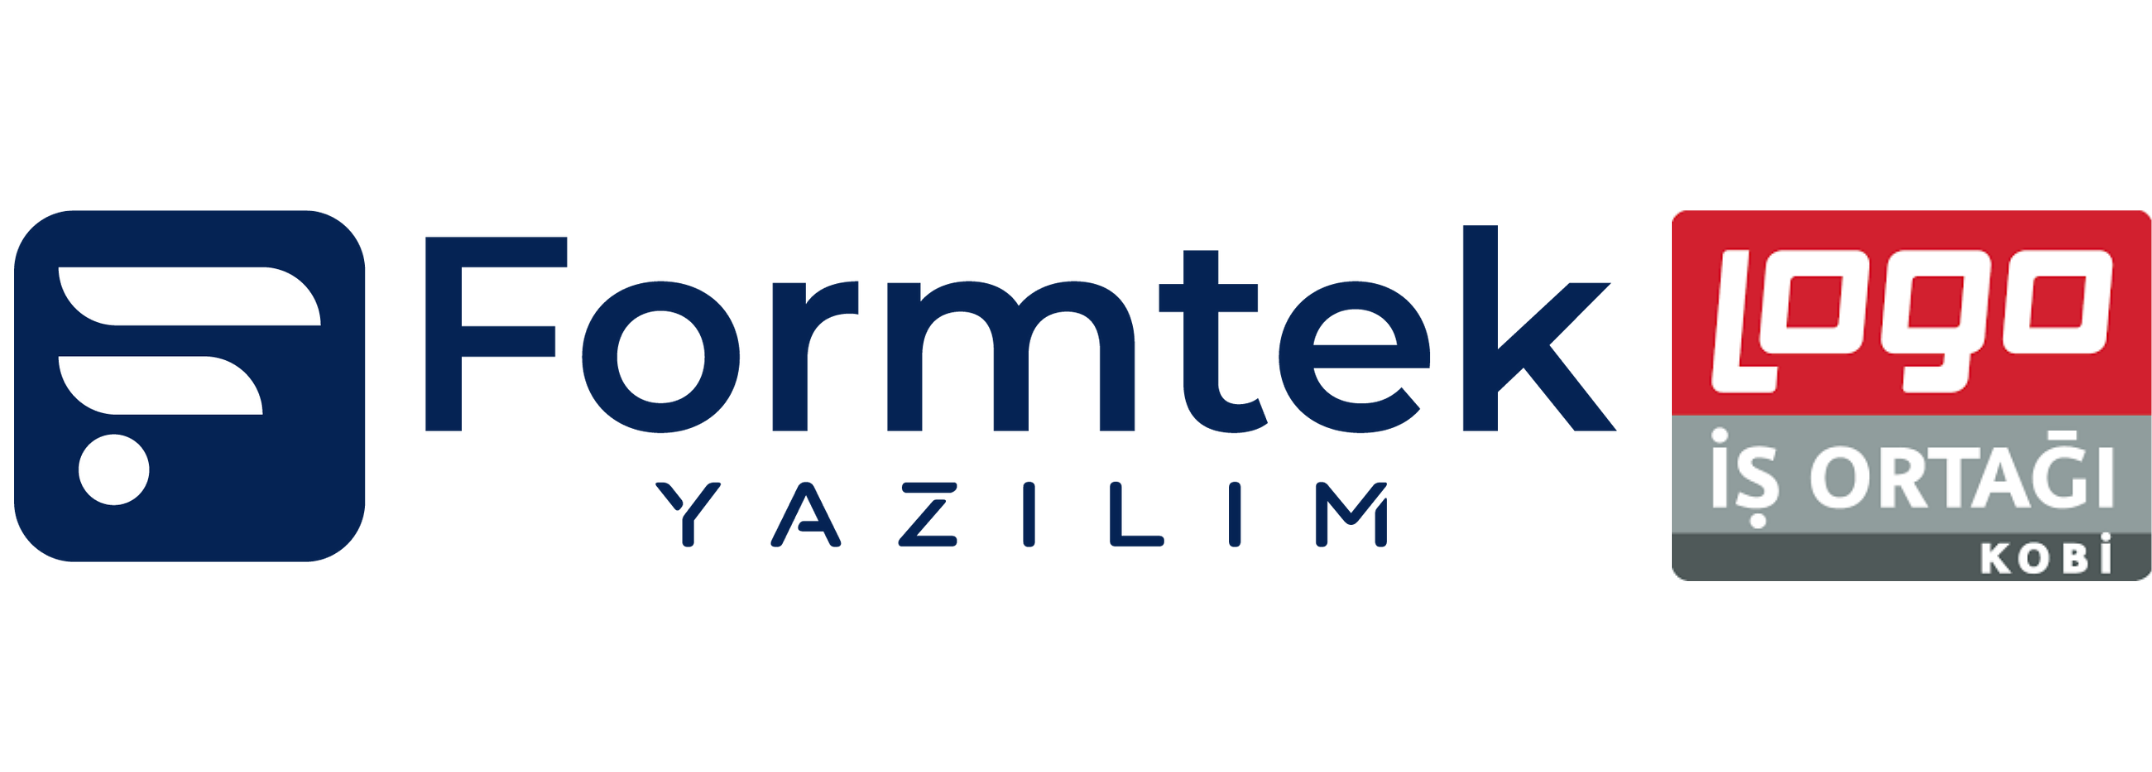 Formtek Yazılım - Bursa Logo Bayi